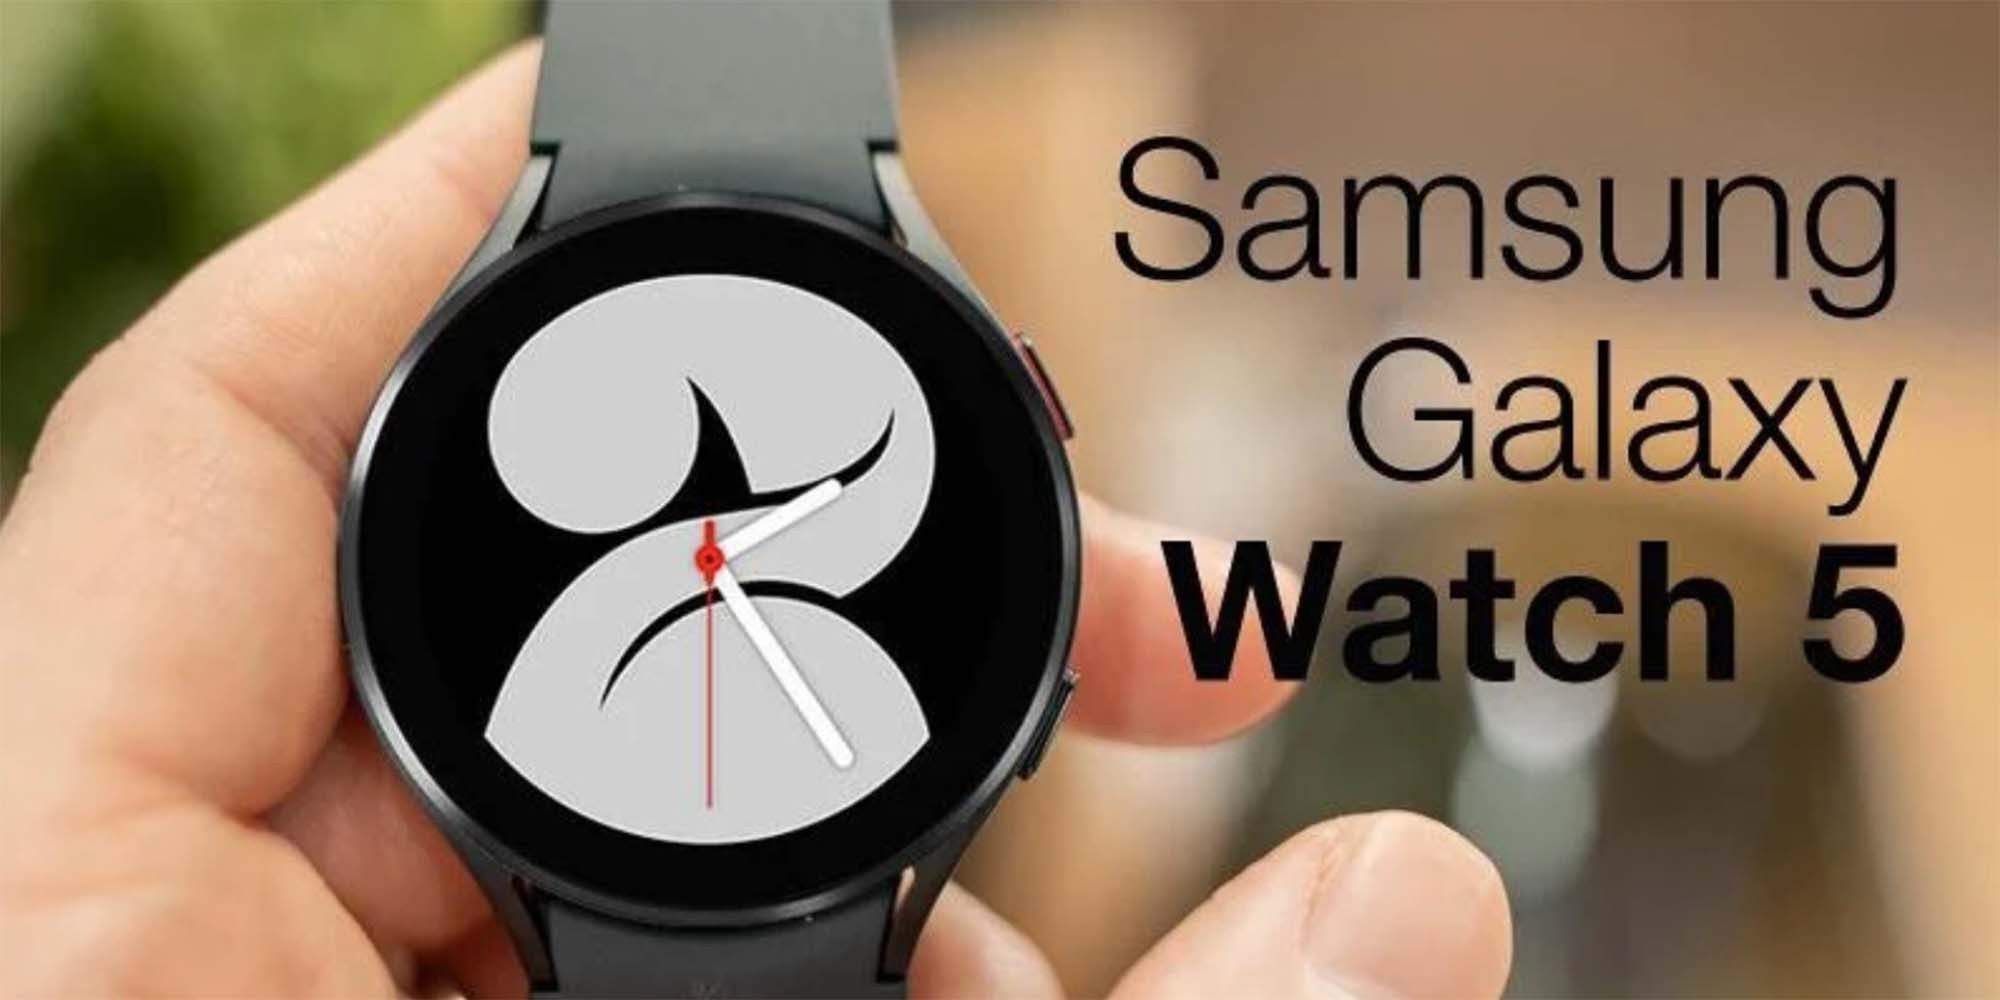 Samsung Galaxy watch 5. Samsung Galaxy watch 5 Samsung. Samsung Galaxy watch 5 Pro. Часы Samsung Galaxy watch 5 Pro. Галакси 5 про часы